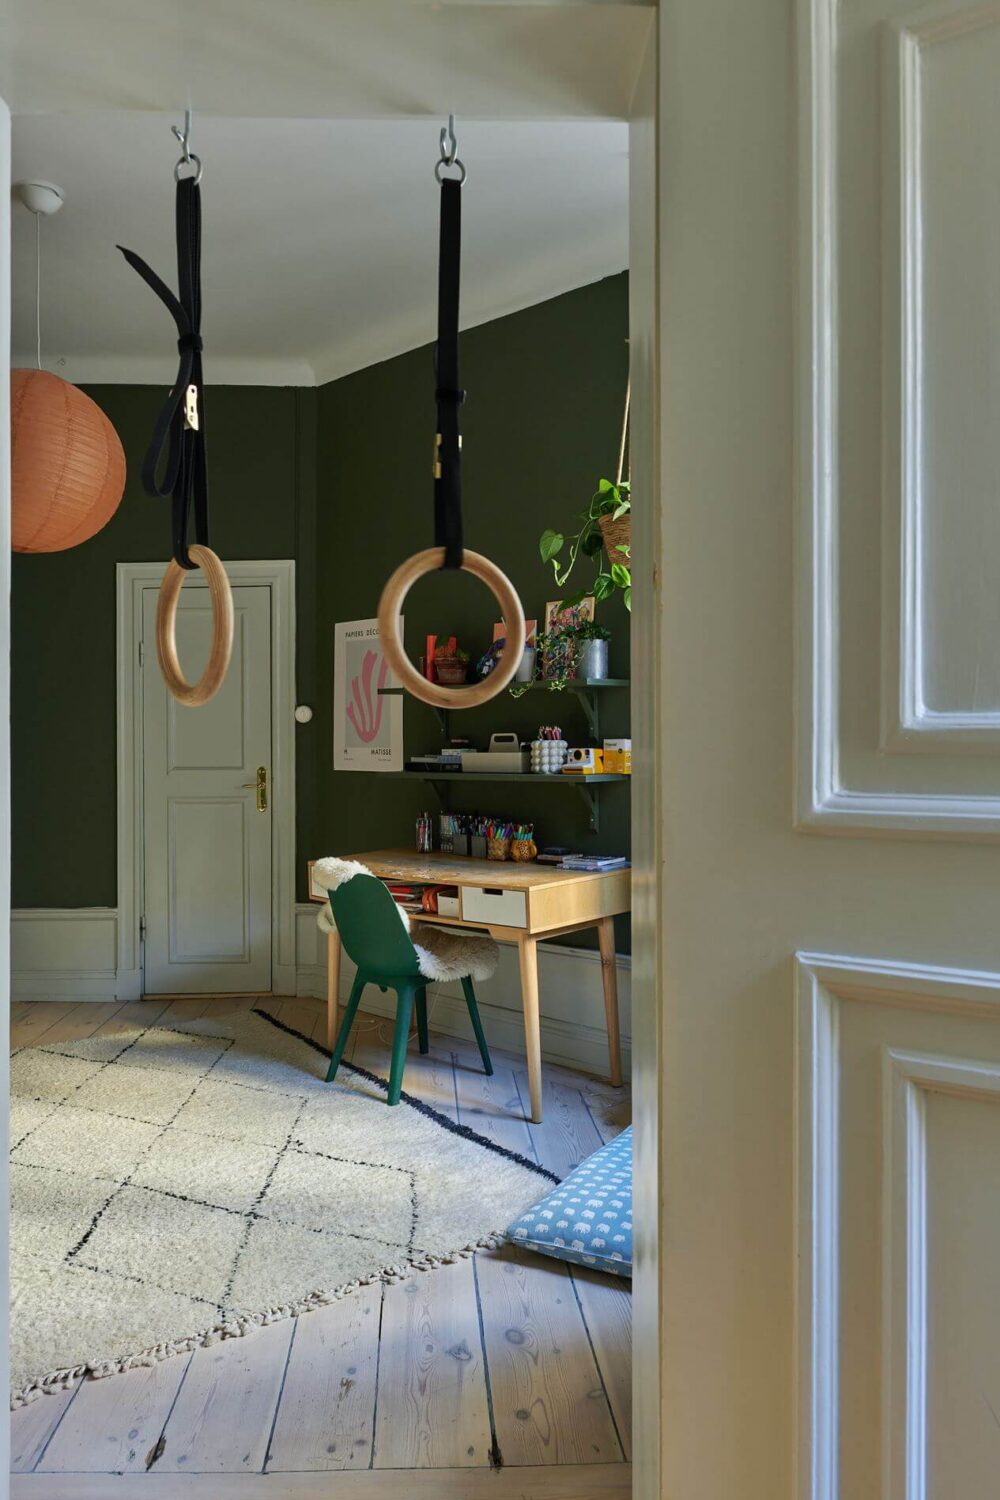 green-walls-kids-bedroom-desk-hanging-rings-wooden-floor-nordroom